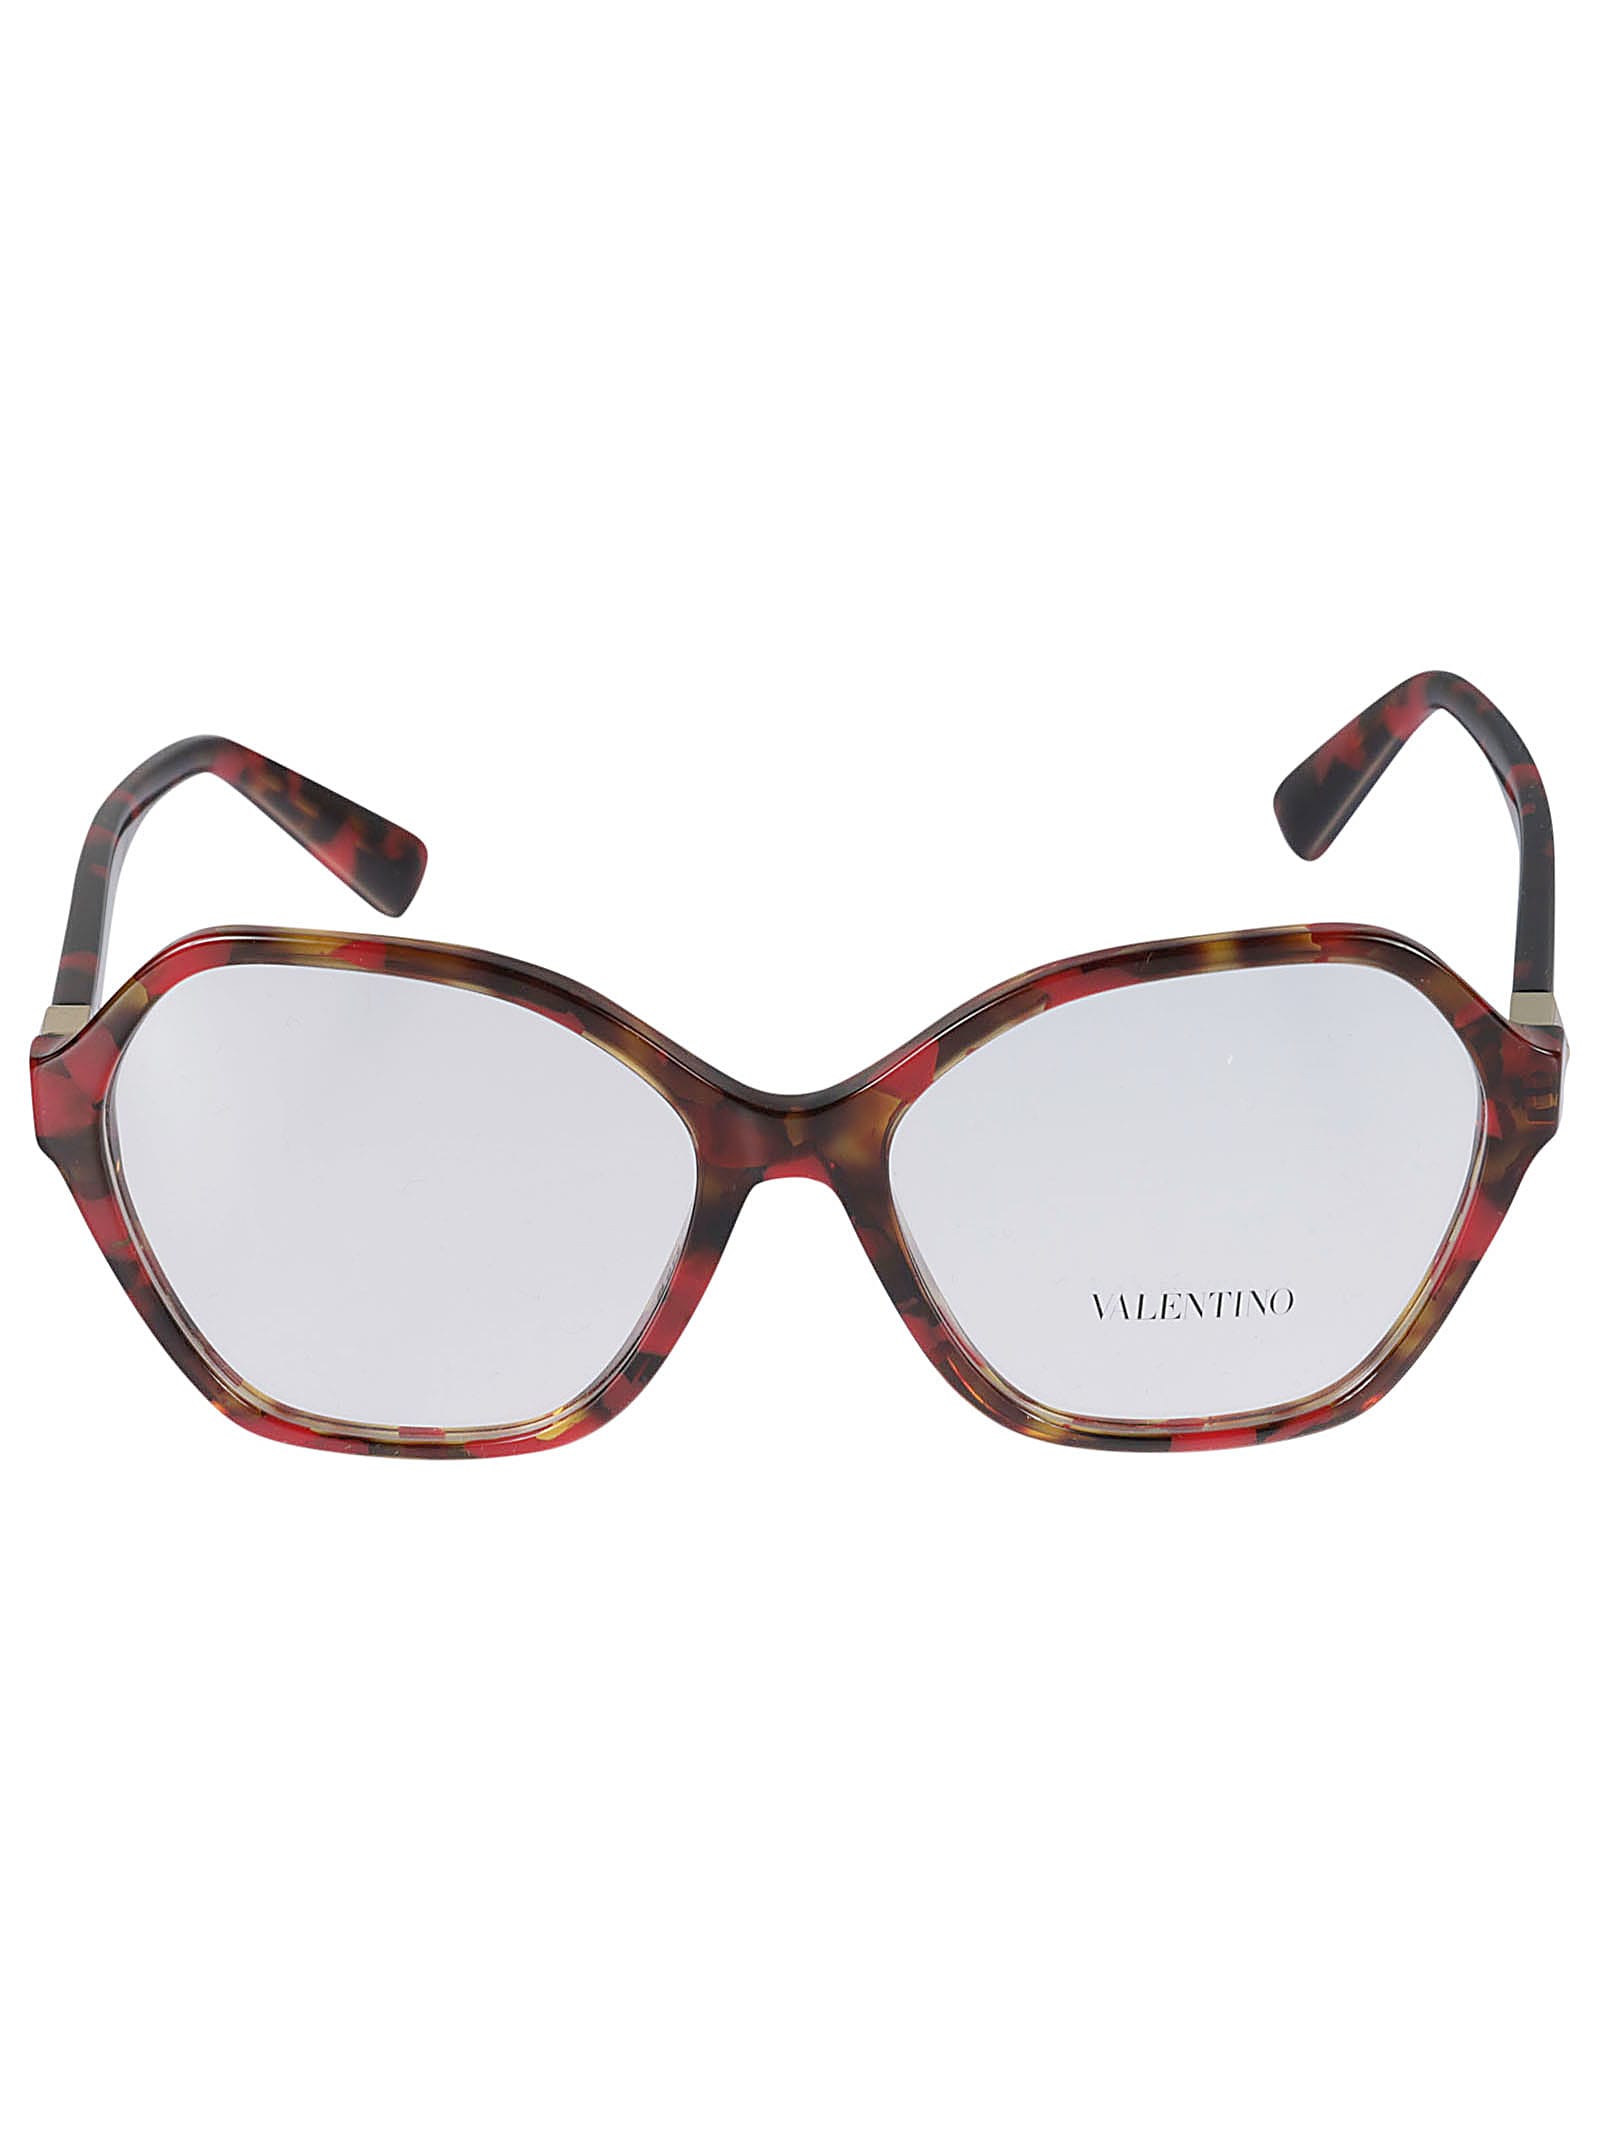 Valentino Vista3073 Glasses